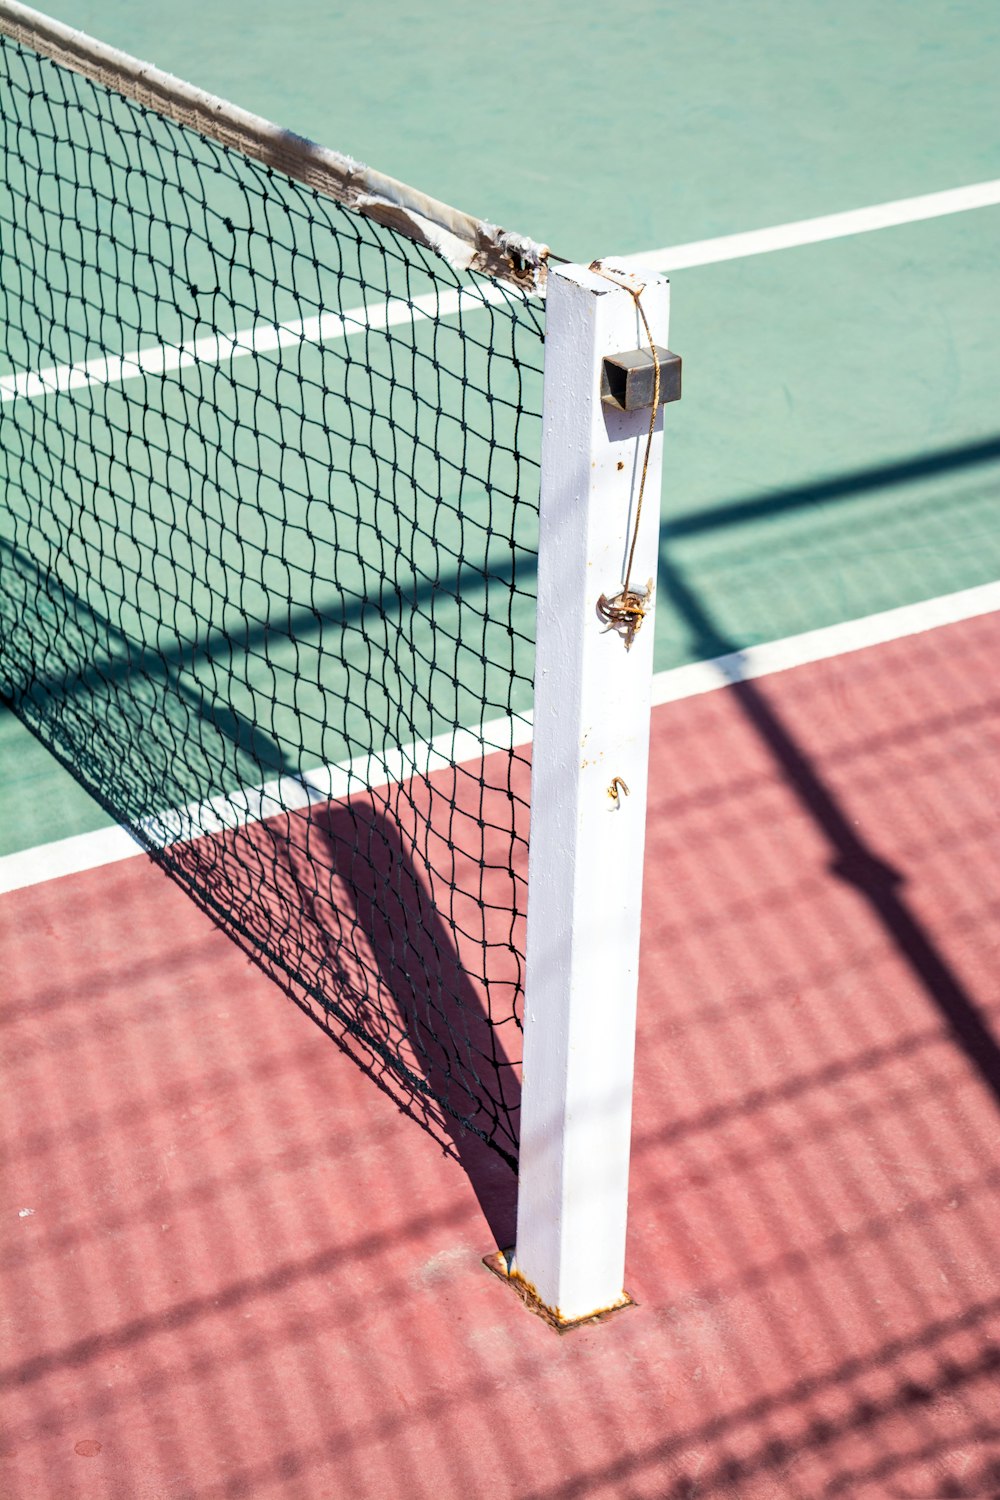 Um tiro focado de um poste de um lado de uma rede de tênis.